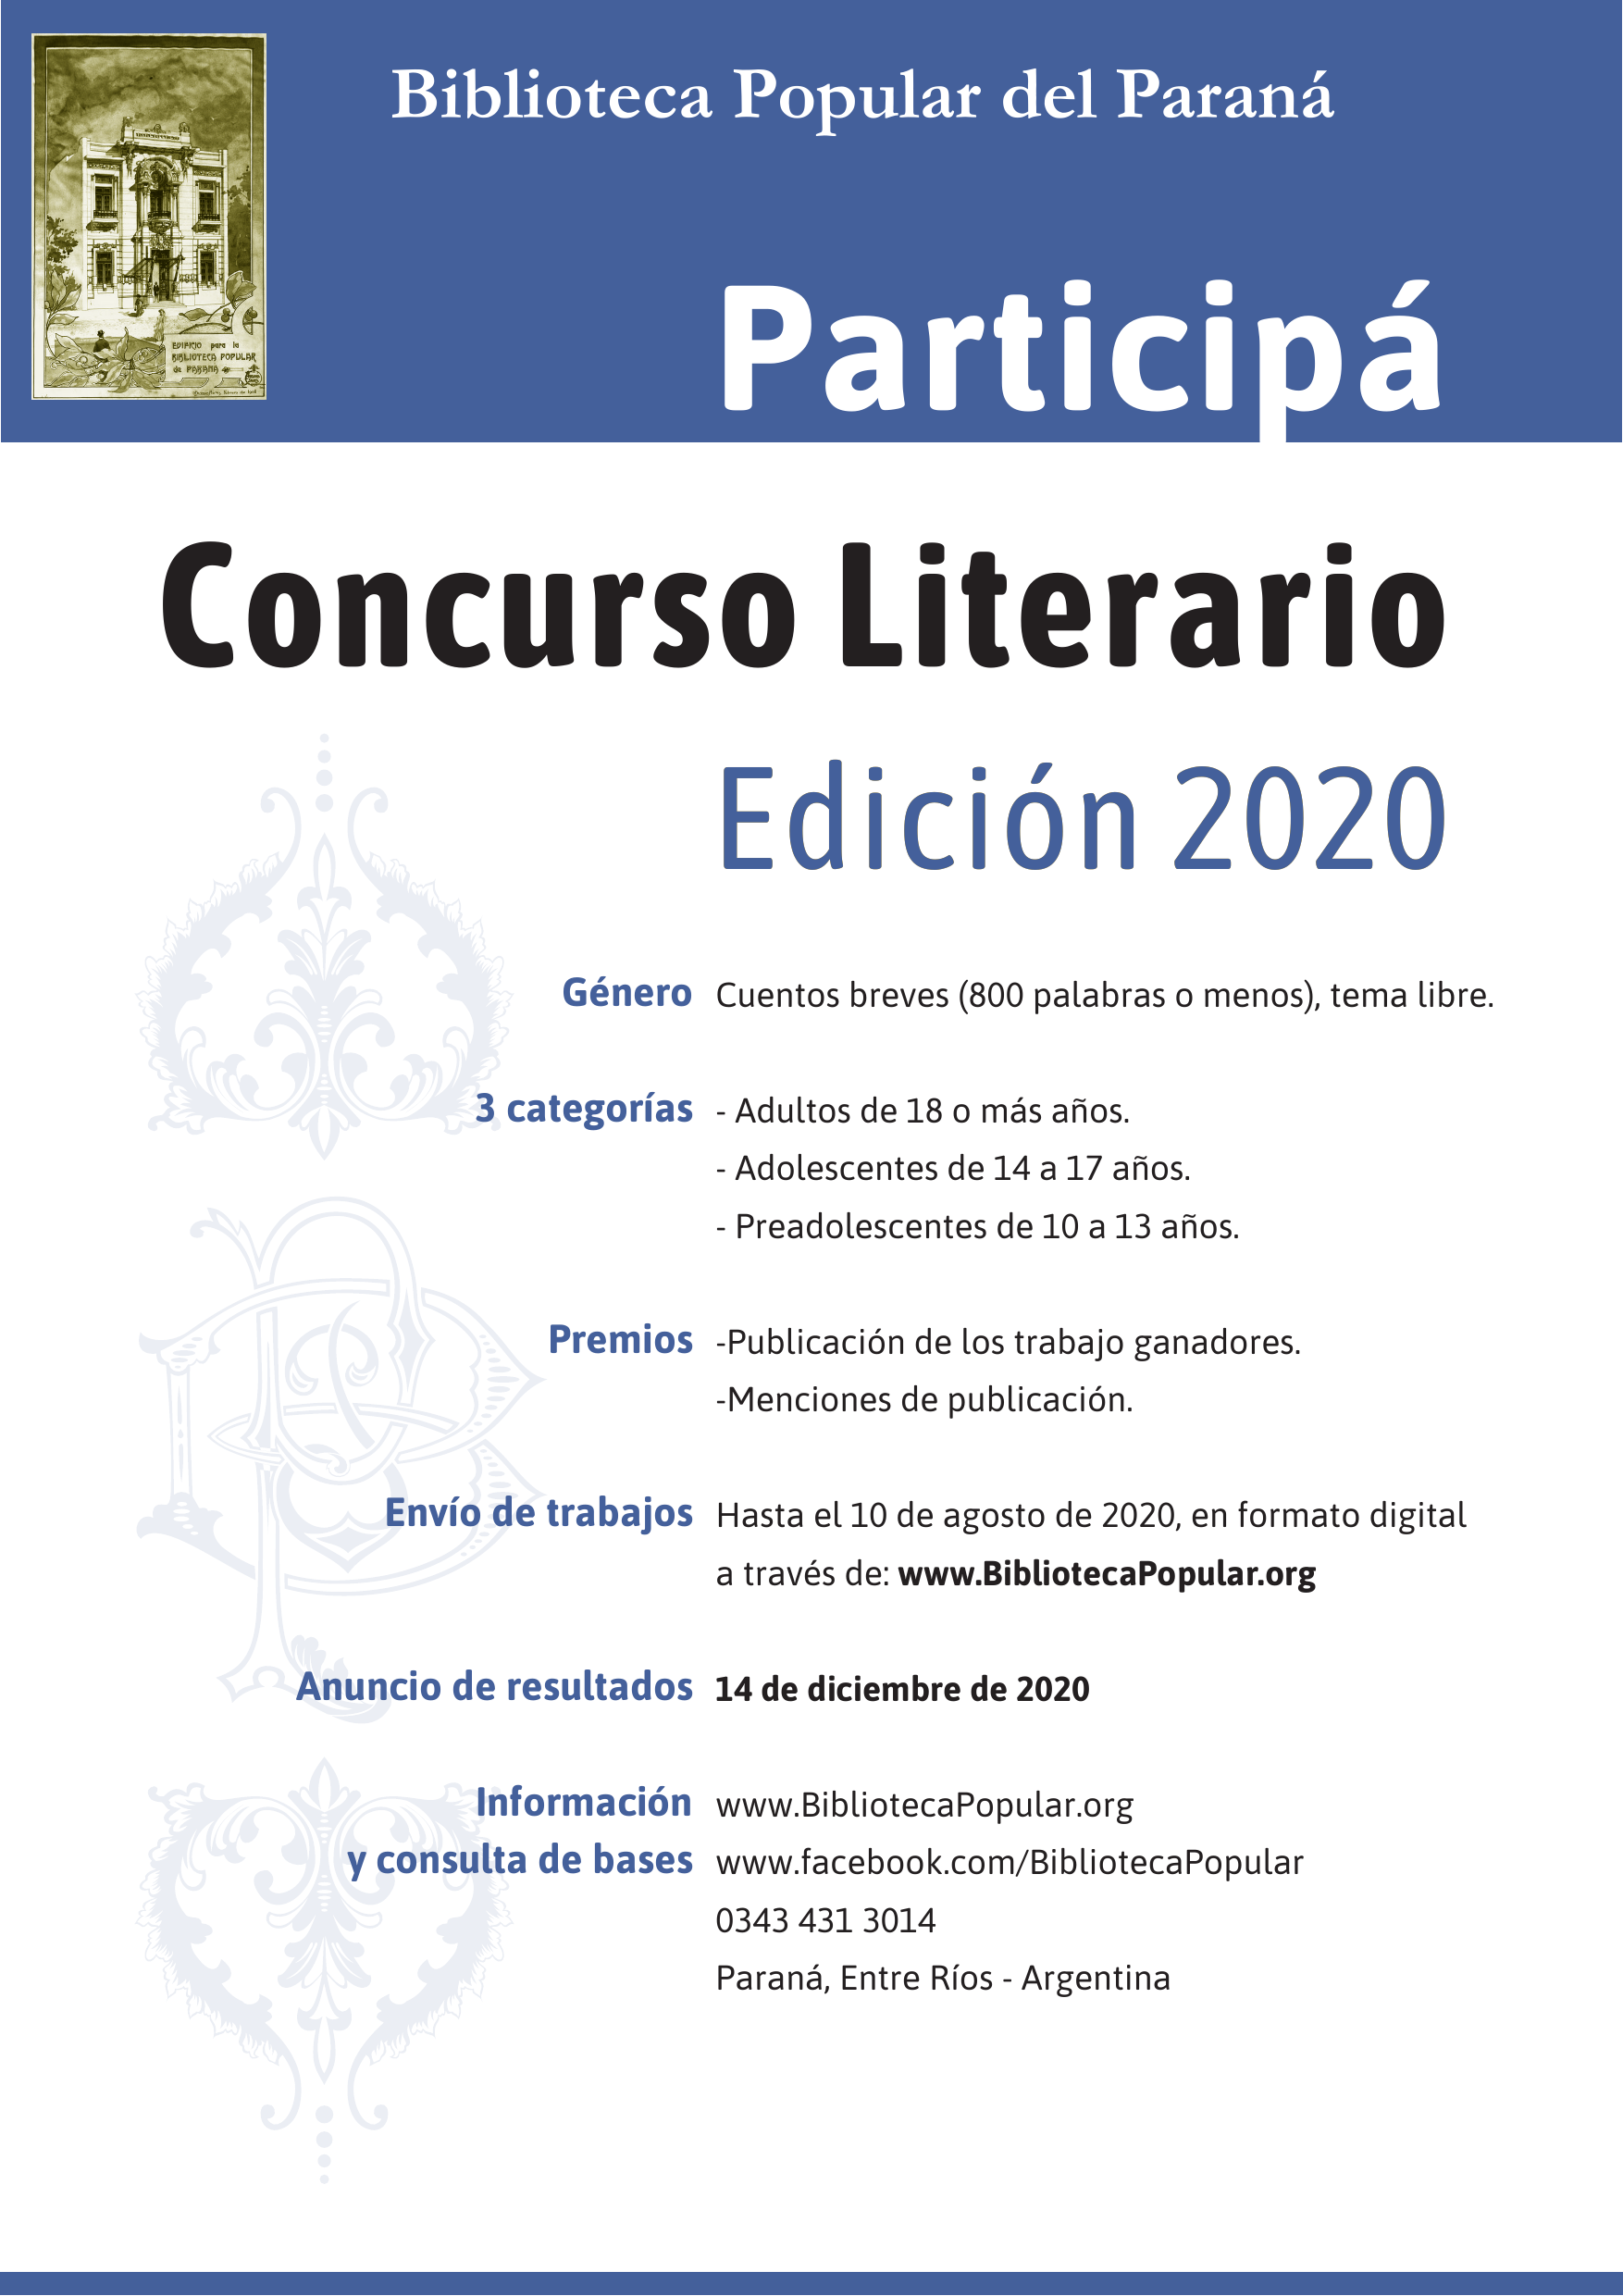 Afiche promocional del Concurso Biblioteca Popular del Paraná, Edición 2020